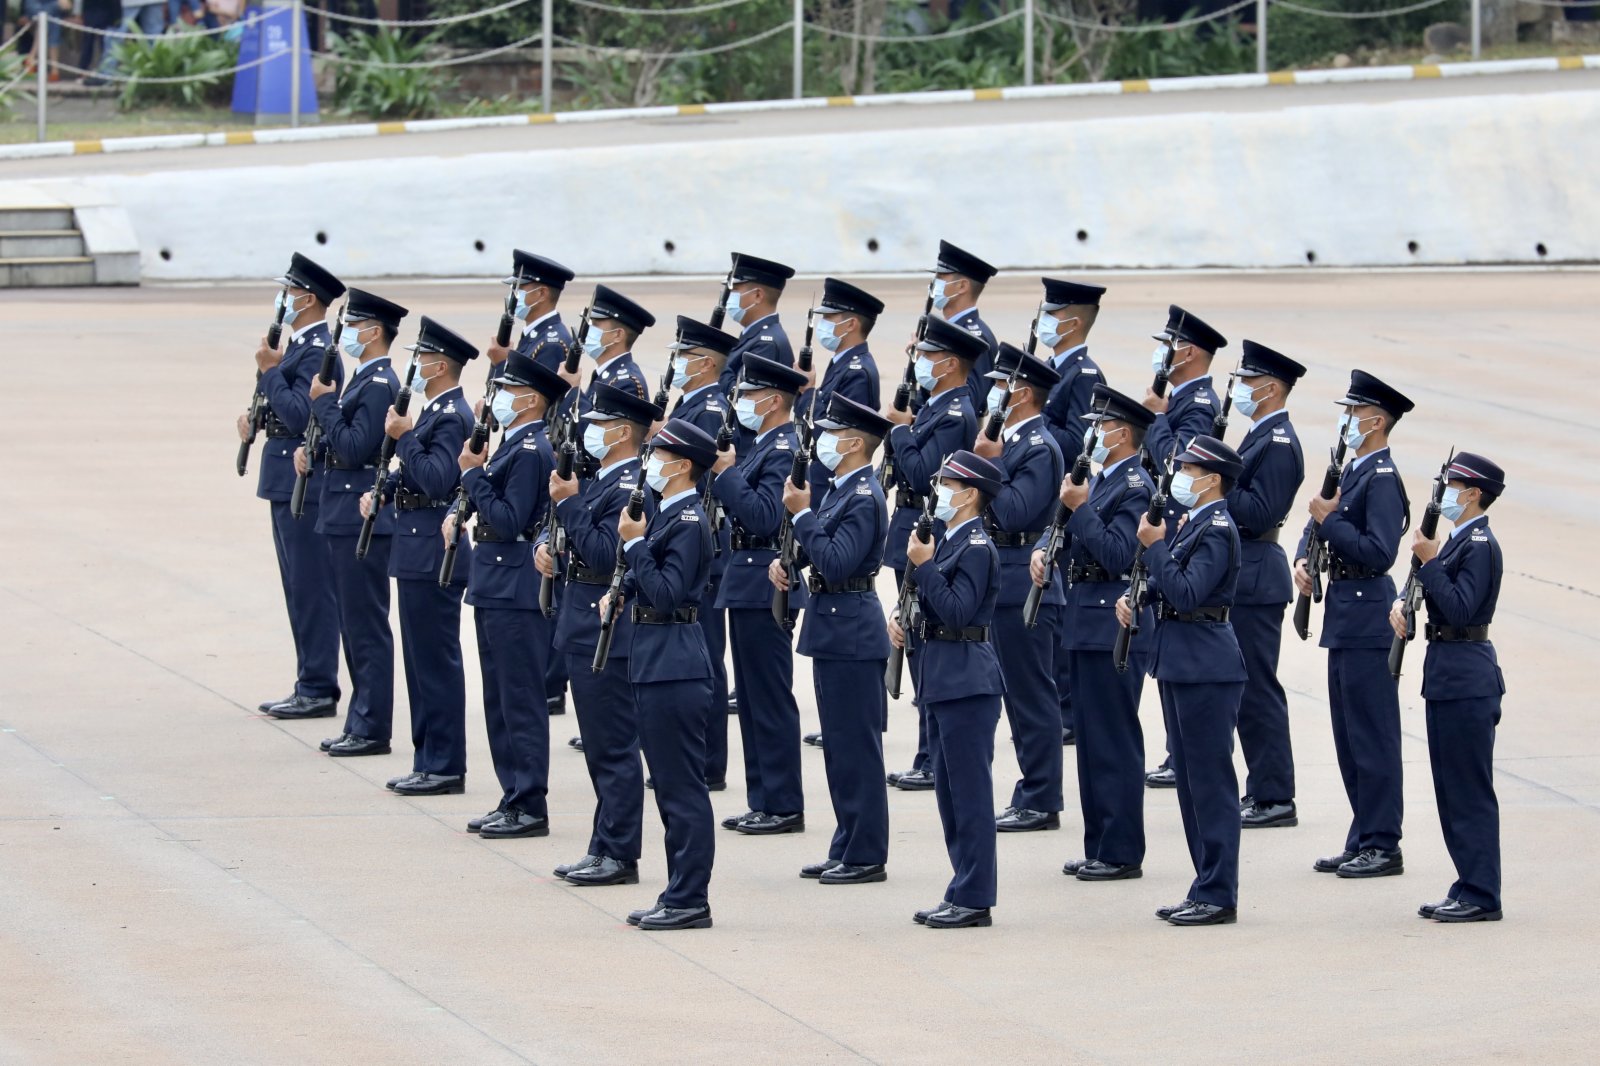 上午10時許，警隊舉行升國旗儀式及奏國歌，隨後警隊首次表演中式步操，不僅展現出警隊對紀律的重視，更表現出警隊的專業、威武和自信。今年2月，駐港部隊曾到黃竹坑警察學院親授中式步操，是香港步操發展的重要一步。此次表演不僅有中式步操元素，還具有香港本地特色，市民看完紛紛鼓掌，讚歎警隊好樣的。（大公文匯全媒體記者李斯哲攝）